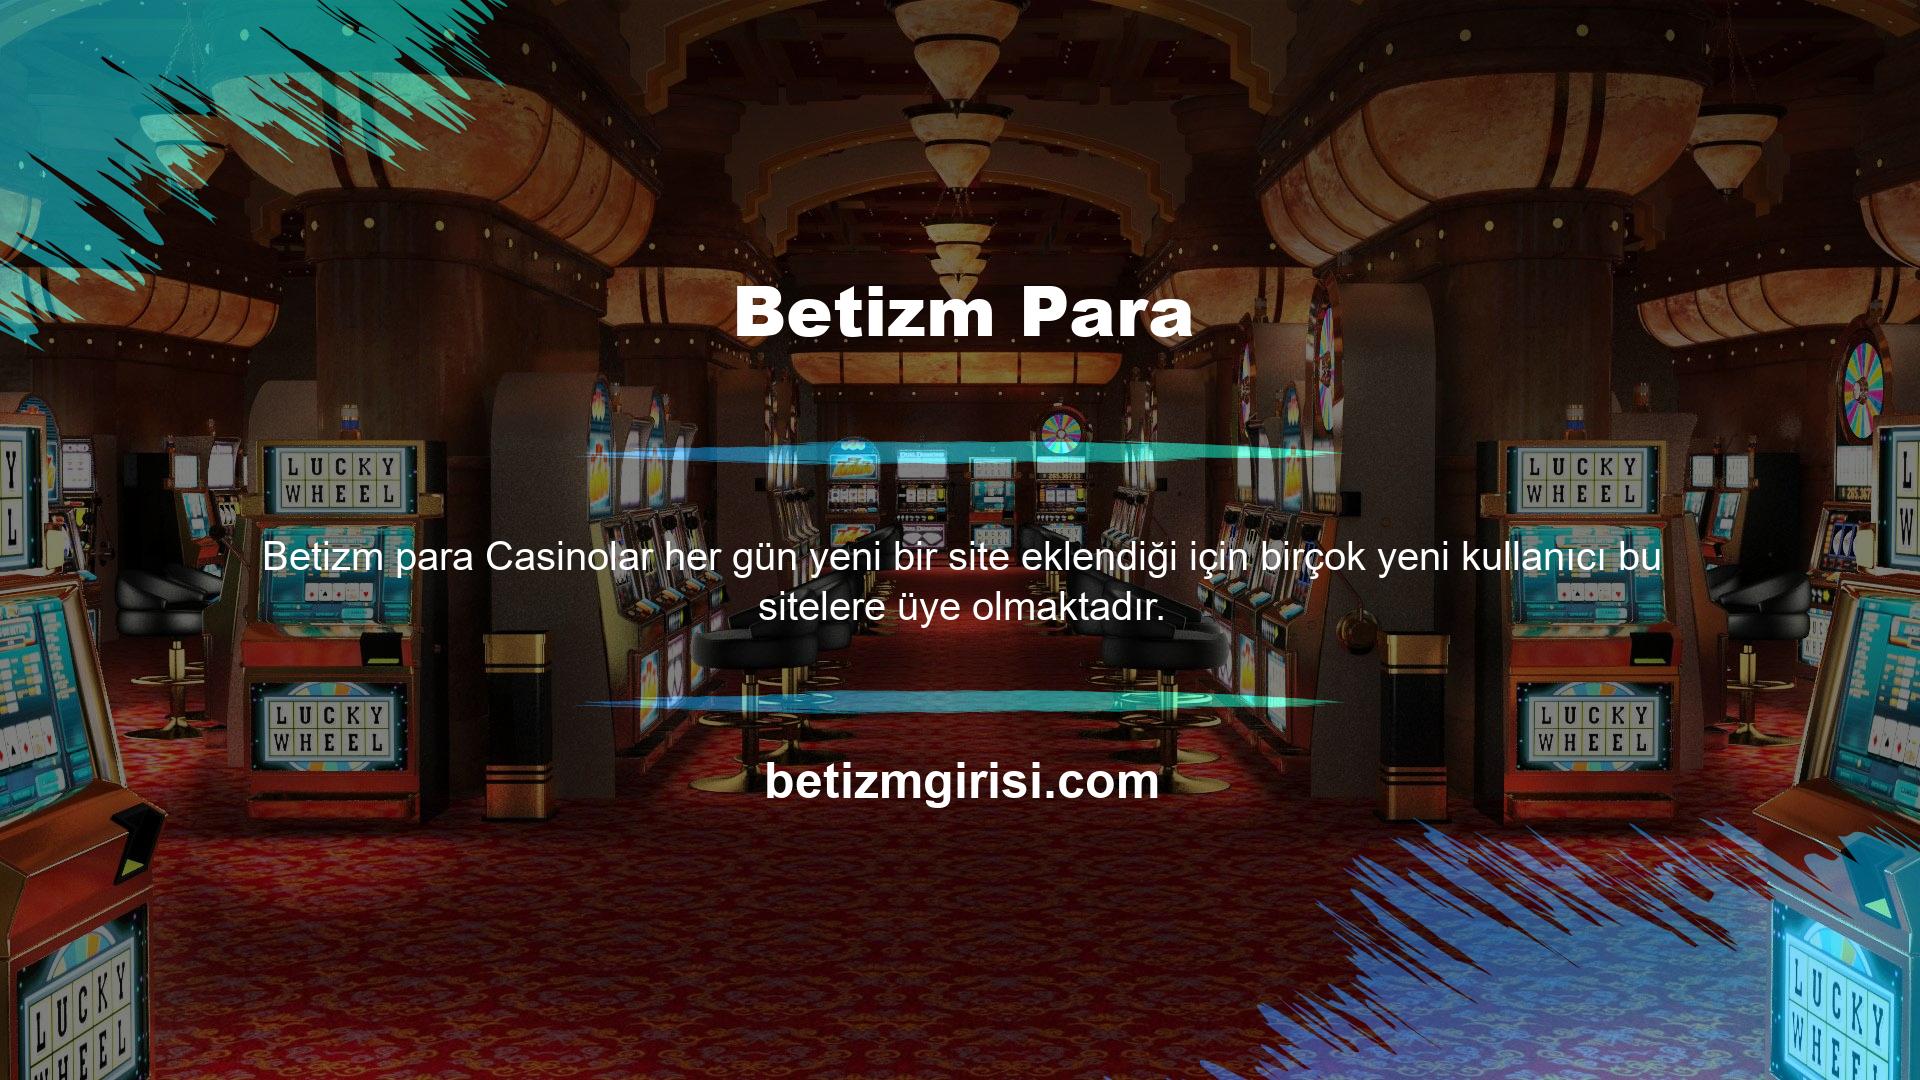 Çevrimiçi casinolar, seyahat kısıtlaması olmaksızın size her yerde casinolar eğlencesi sunar